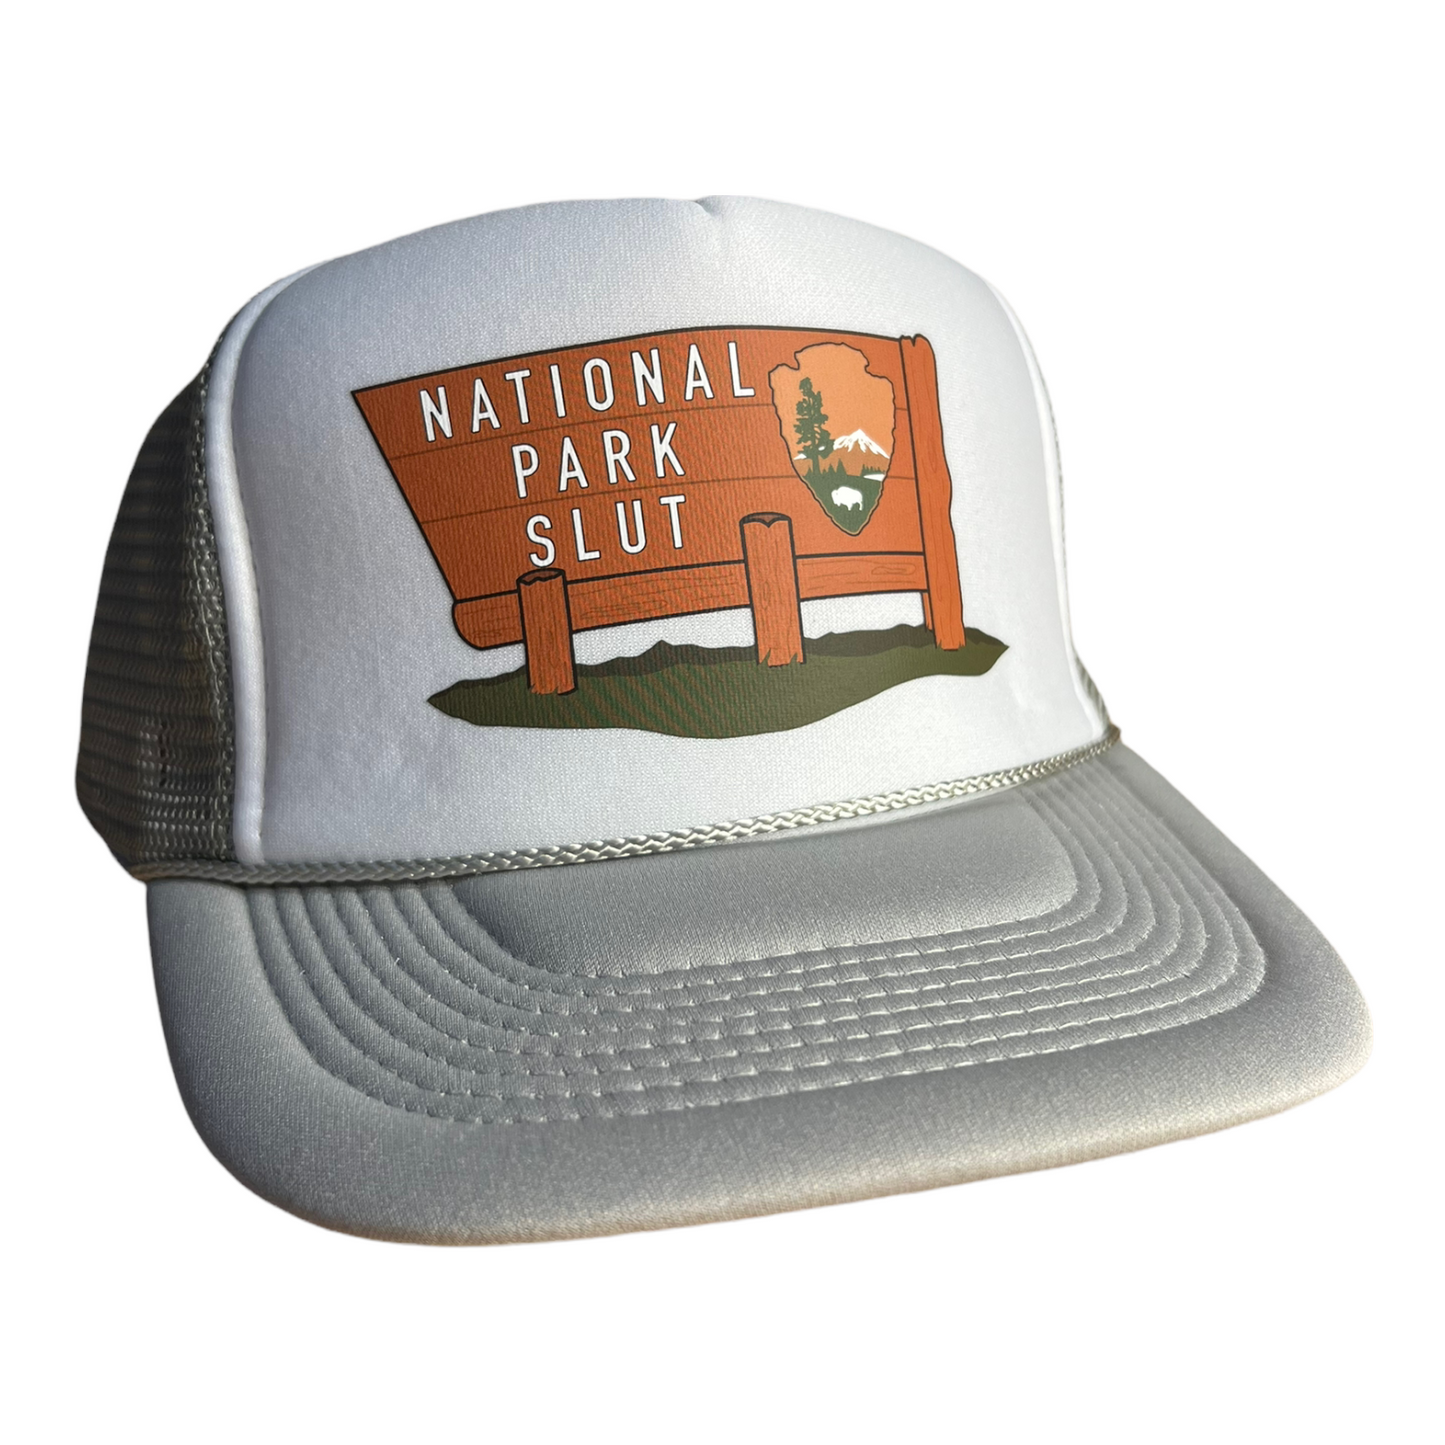 National Park Slut Hat Funny Trucker Hat Gray/White